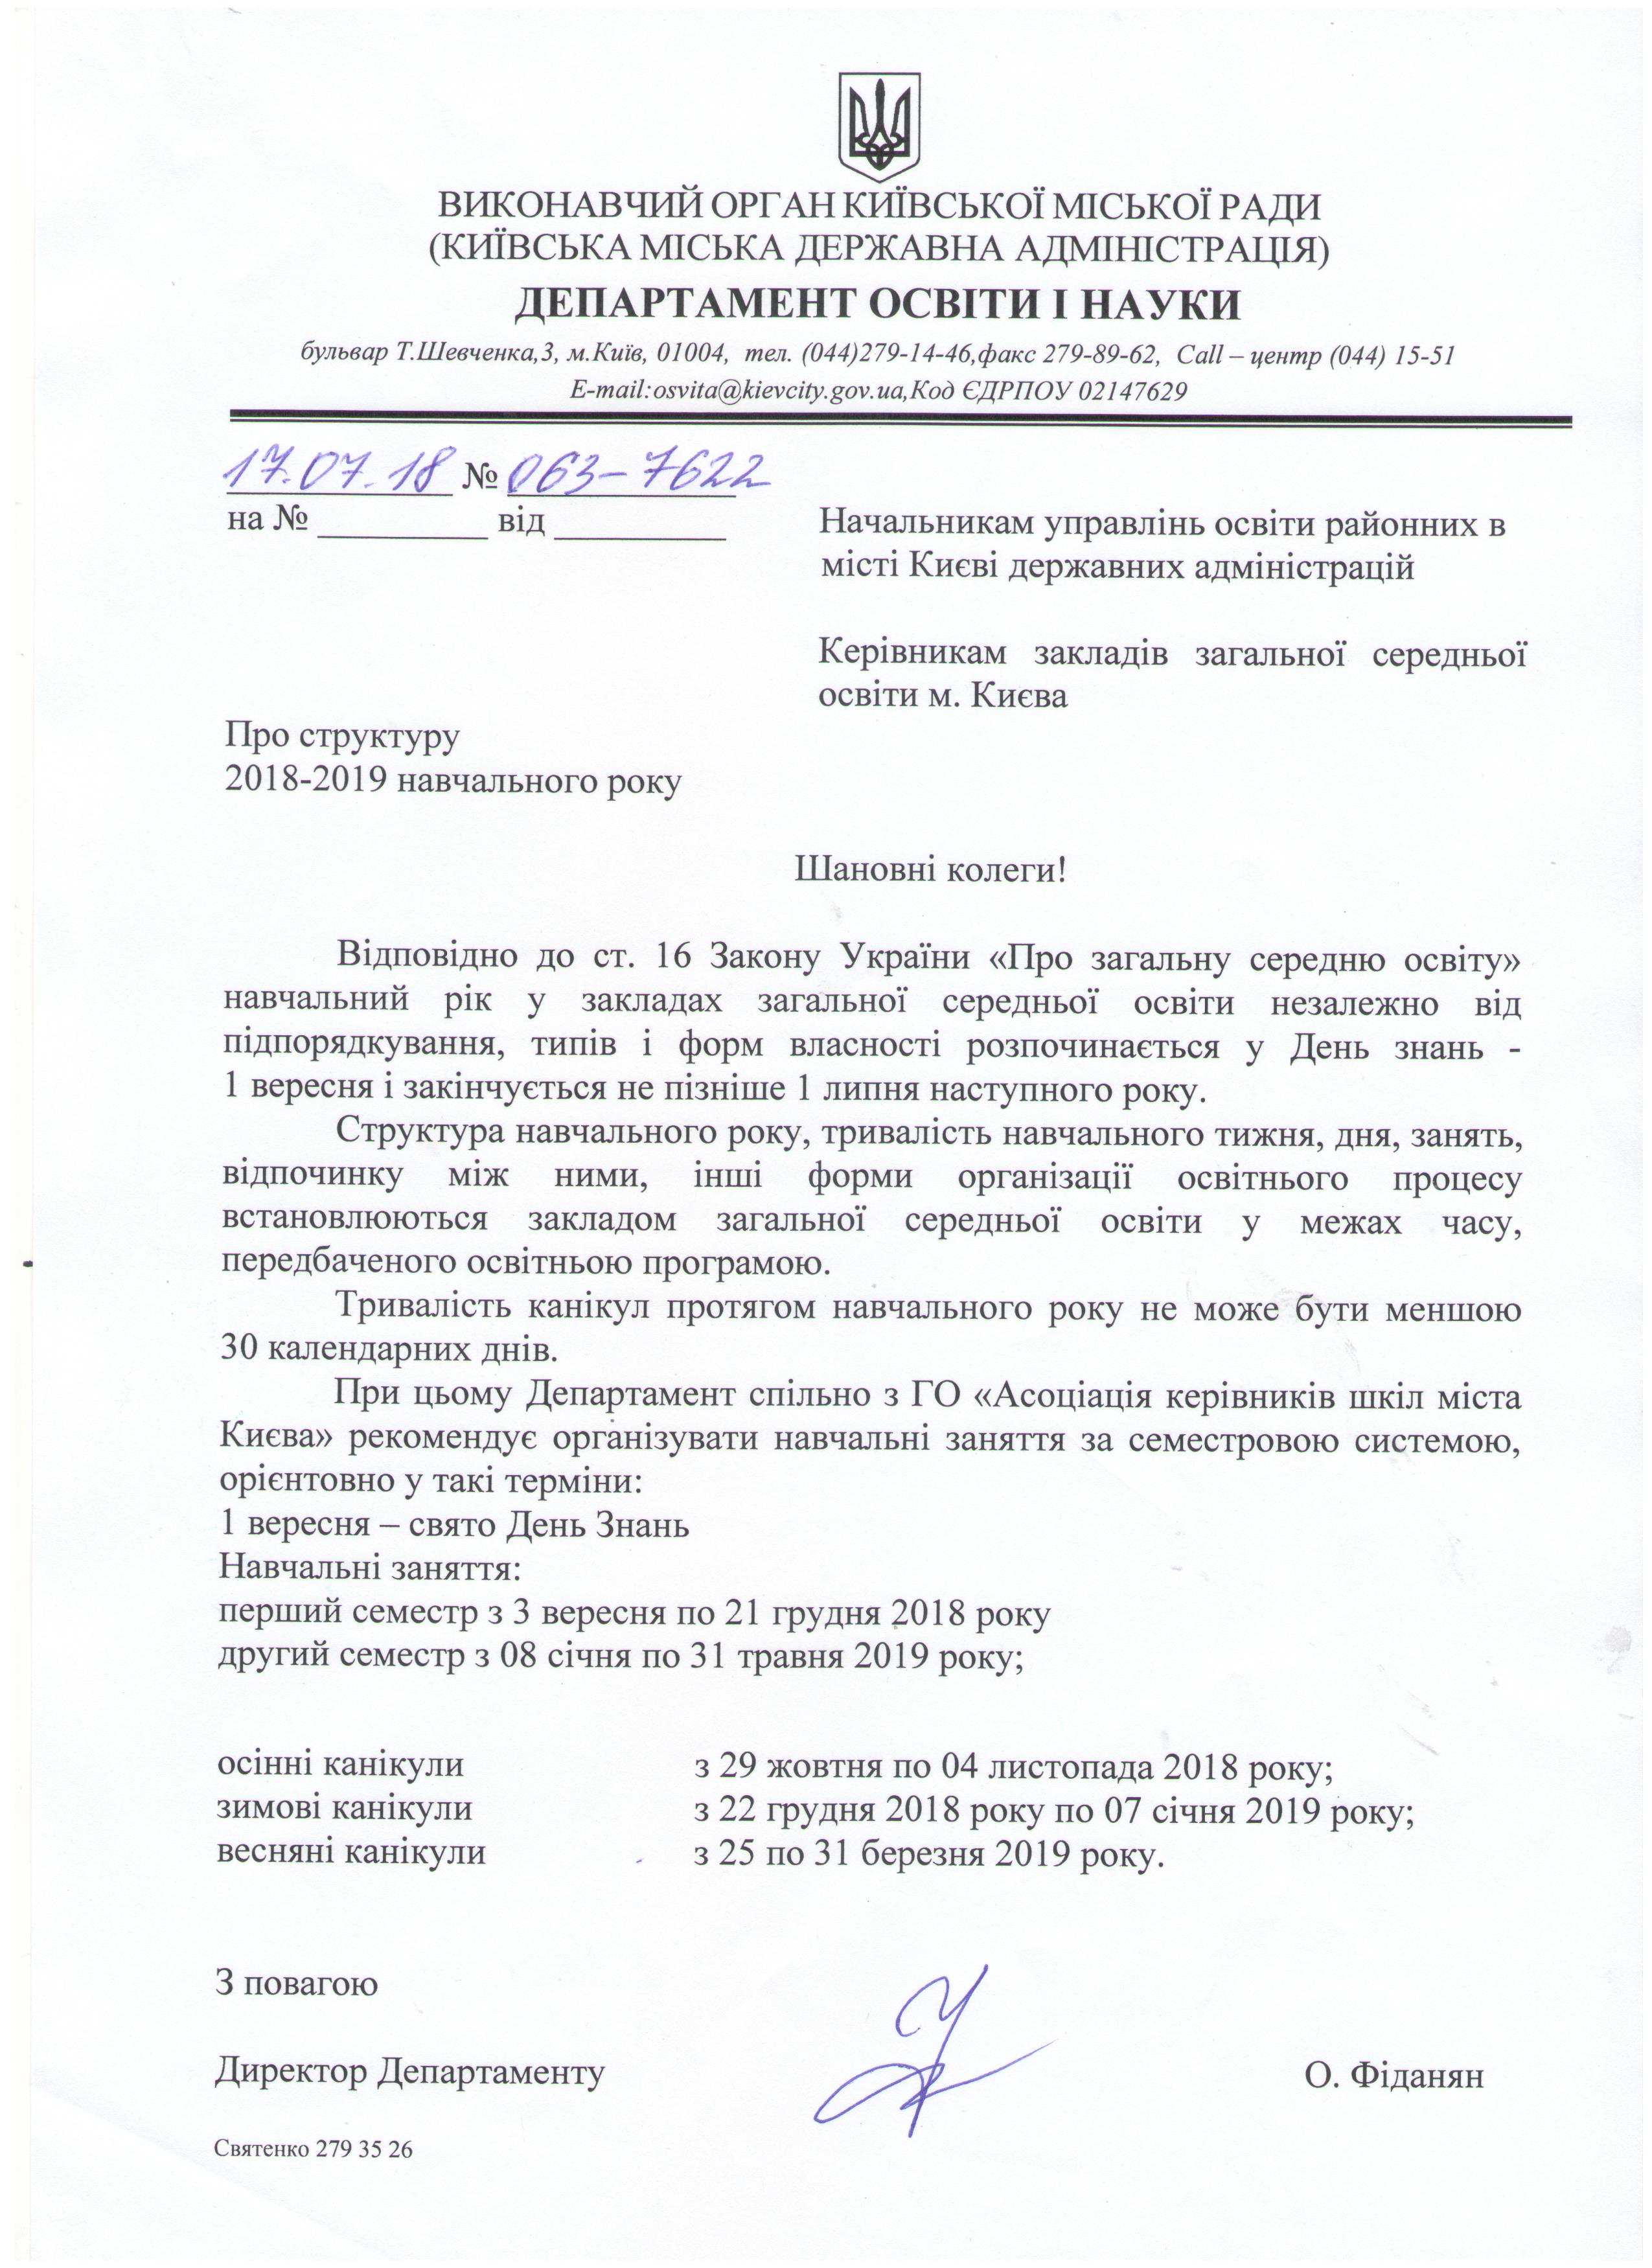 http://don.kievcity.gov.ua/files/2018/7/19/lyststruk.jpeg